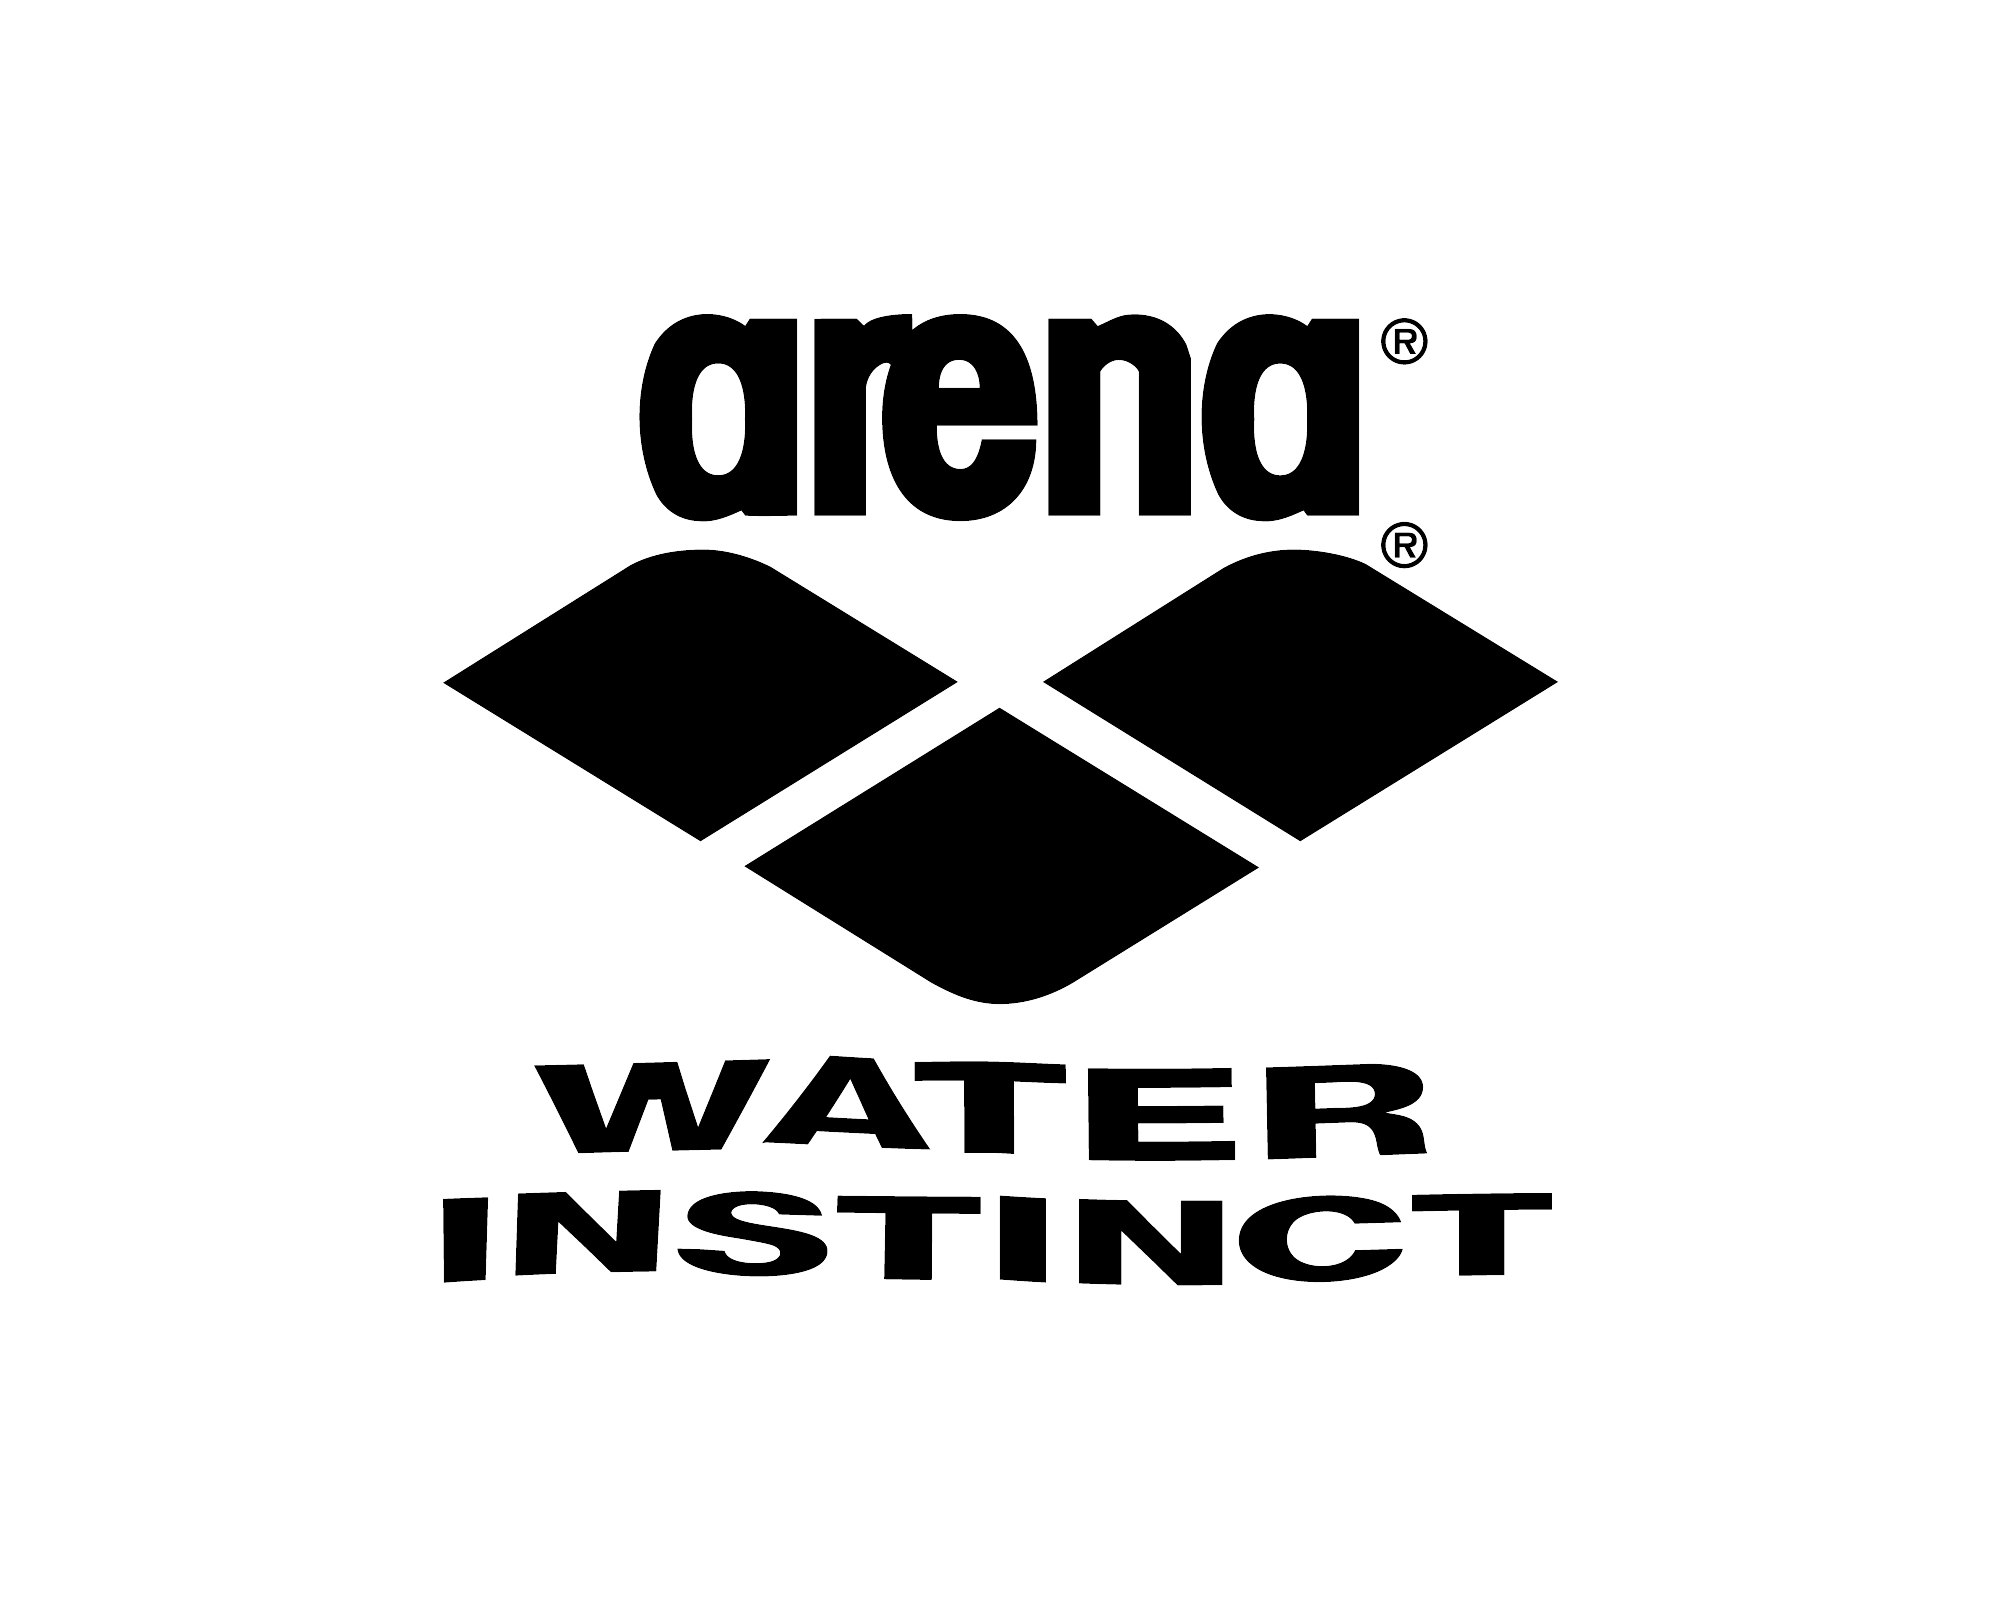 Arena Logo - Arena logo and slogan Water Instinct - Logok